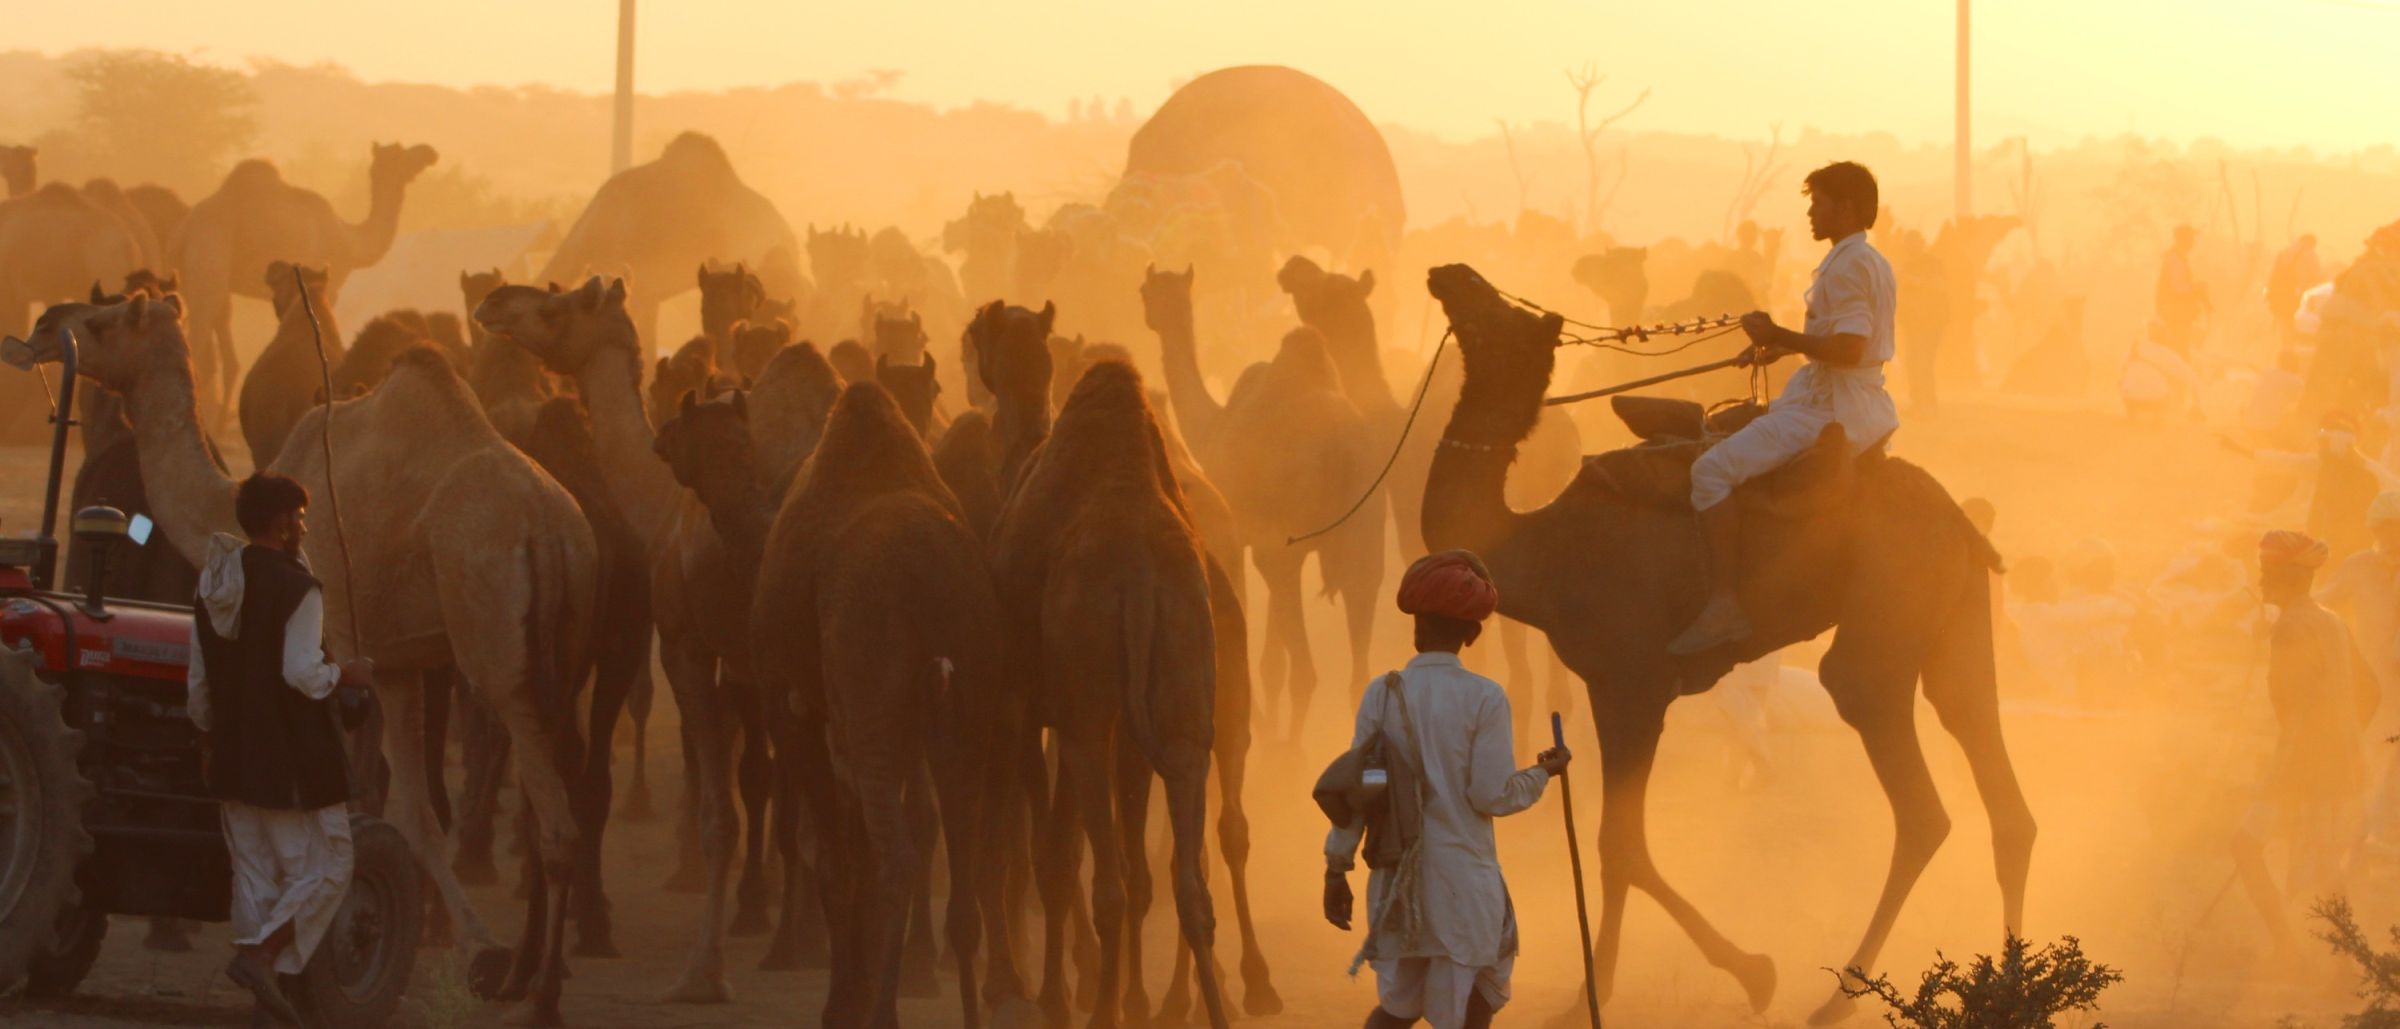 Einmal im Jahr findet im Pilgerort Pushkar die Pushkar-Mela statt. Es ist ein Kamelmarkt und kulturelles Fest.